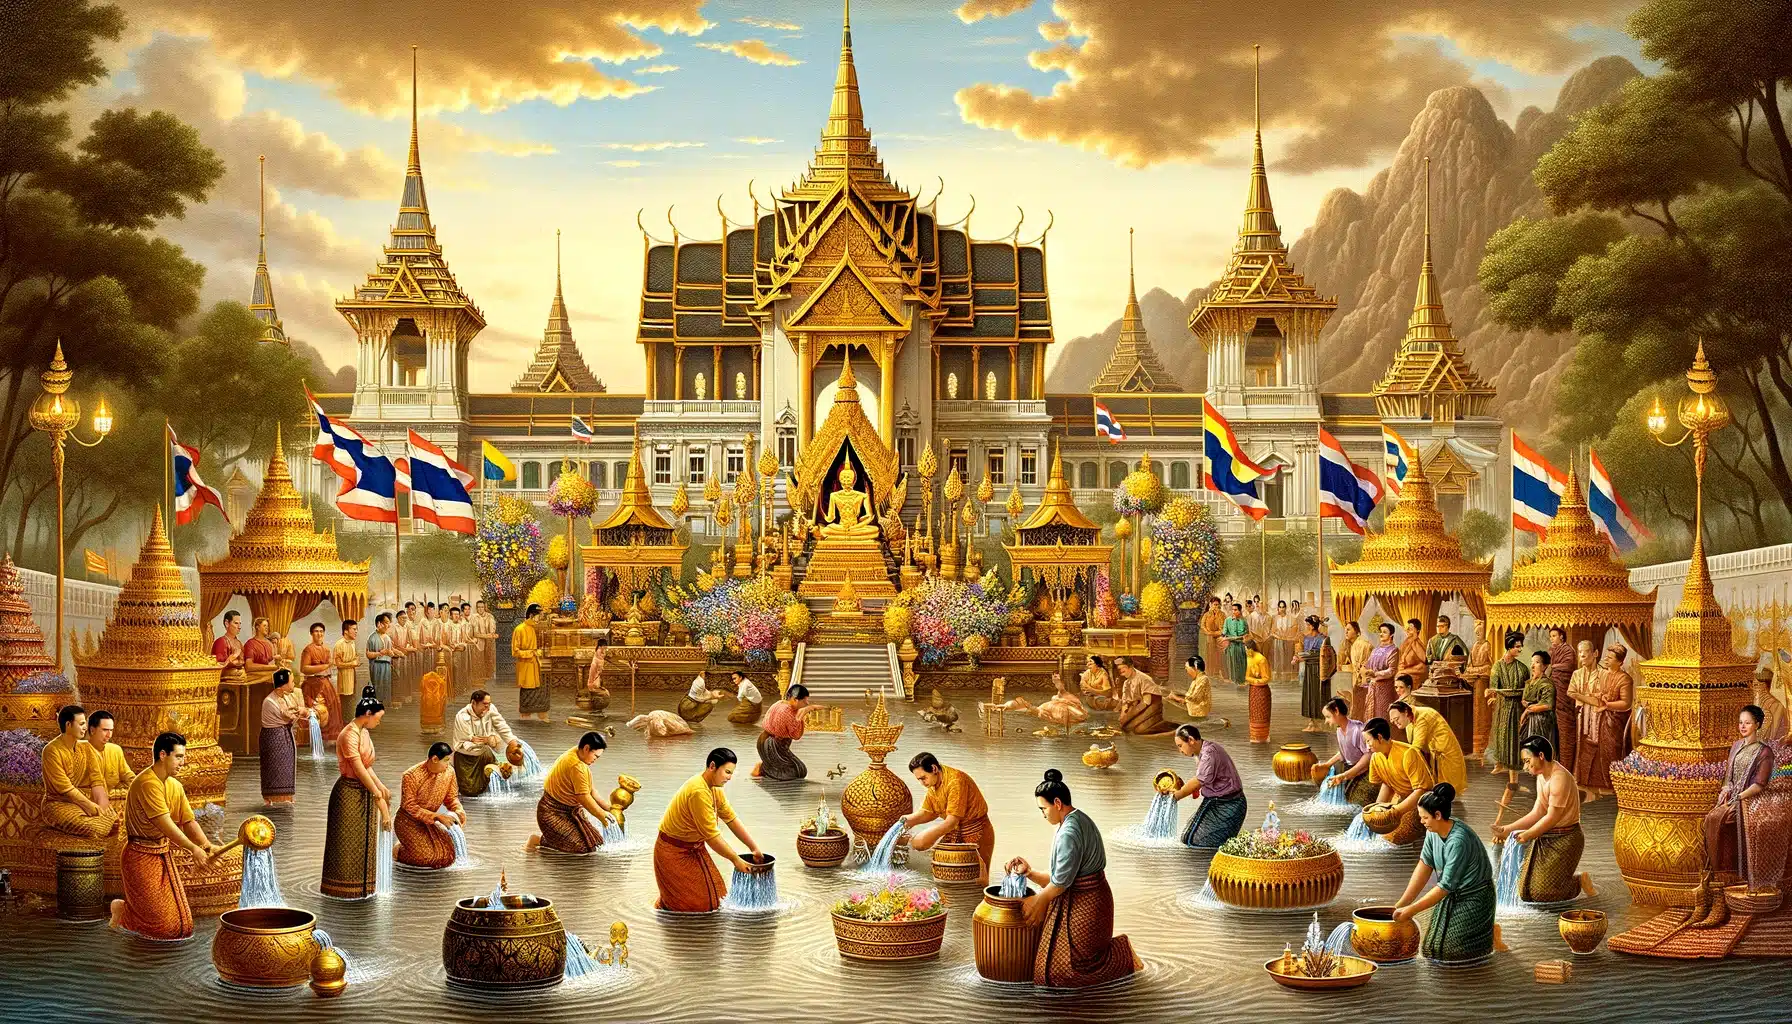 ภาพวาดแนวนอนแสดงการเตรียมงานพระราชพิธีฉัตรมงคล มีฉากเป็นพระบรมมหาราชวังประดับด้วยเครื่องประดับทองและธงชาติไทย ในเบื้องหน้าแสดงการเก็บน้ำจากแม่น้ำทั้ง 18 แห่งของไทย รวมถึงน้ำปัญจมหานทีจากแม่น้ำ 5 สาย ได้แก่ ยมนา อิรวดี มหิ สรภู และคงคา ผู้คนในชุดไทยดั้งเดิมกำลังเตรียมและประกอบพิธีต่างๆ เน้นความสำคัญทางวัฒนธรรมและความเคร่งขรึมของงาน